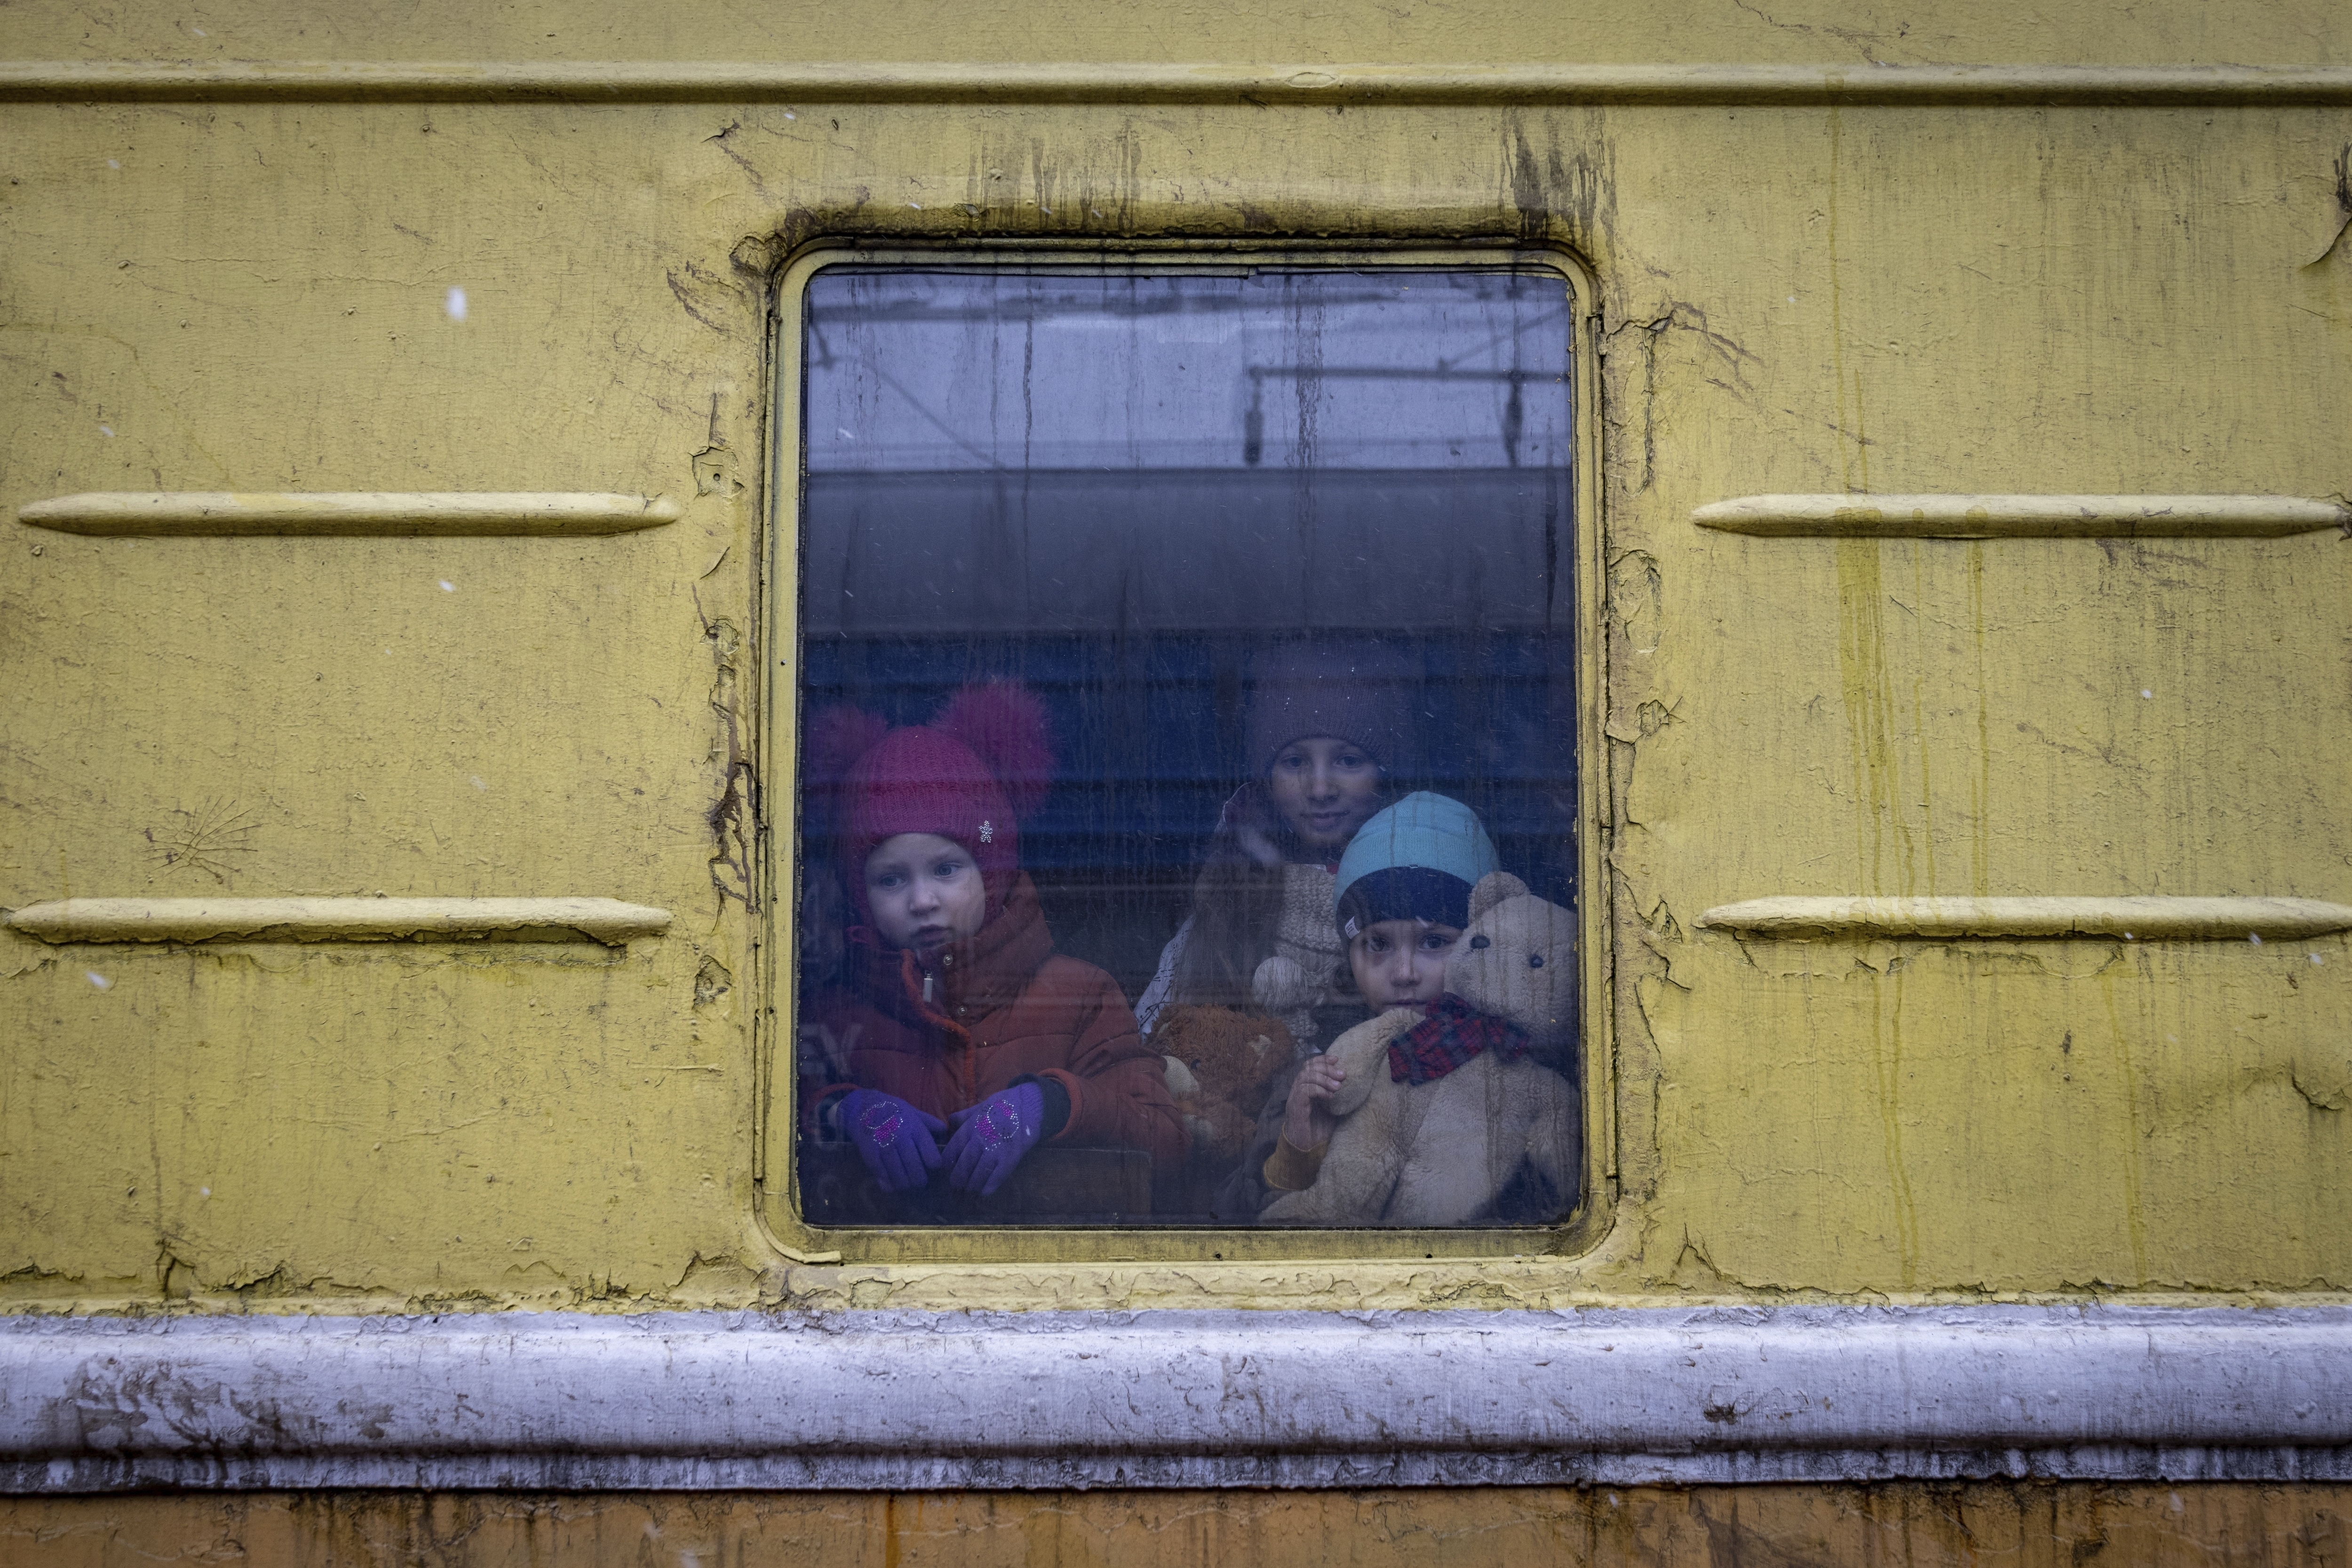 Children on a train.